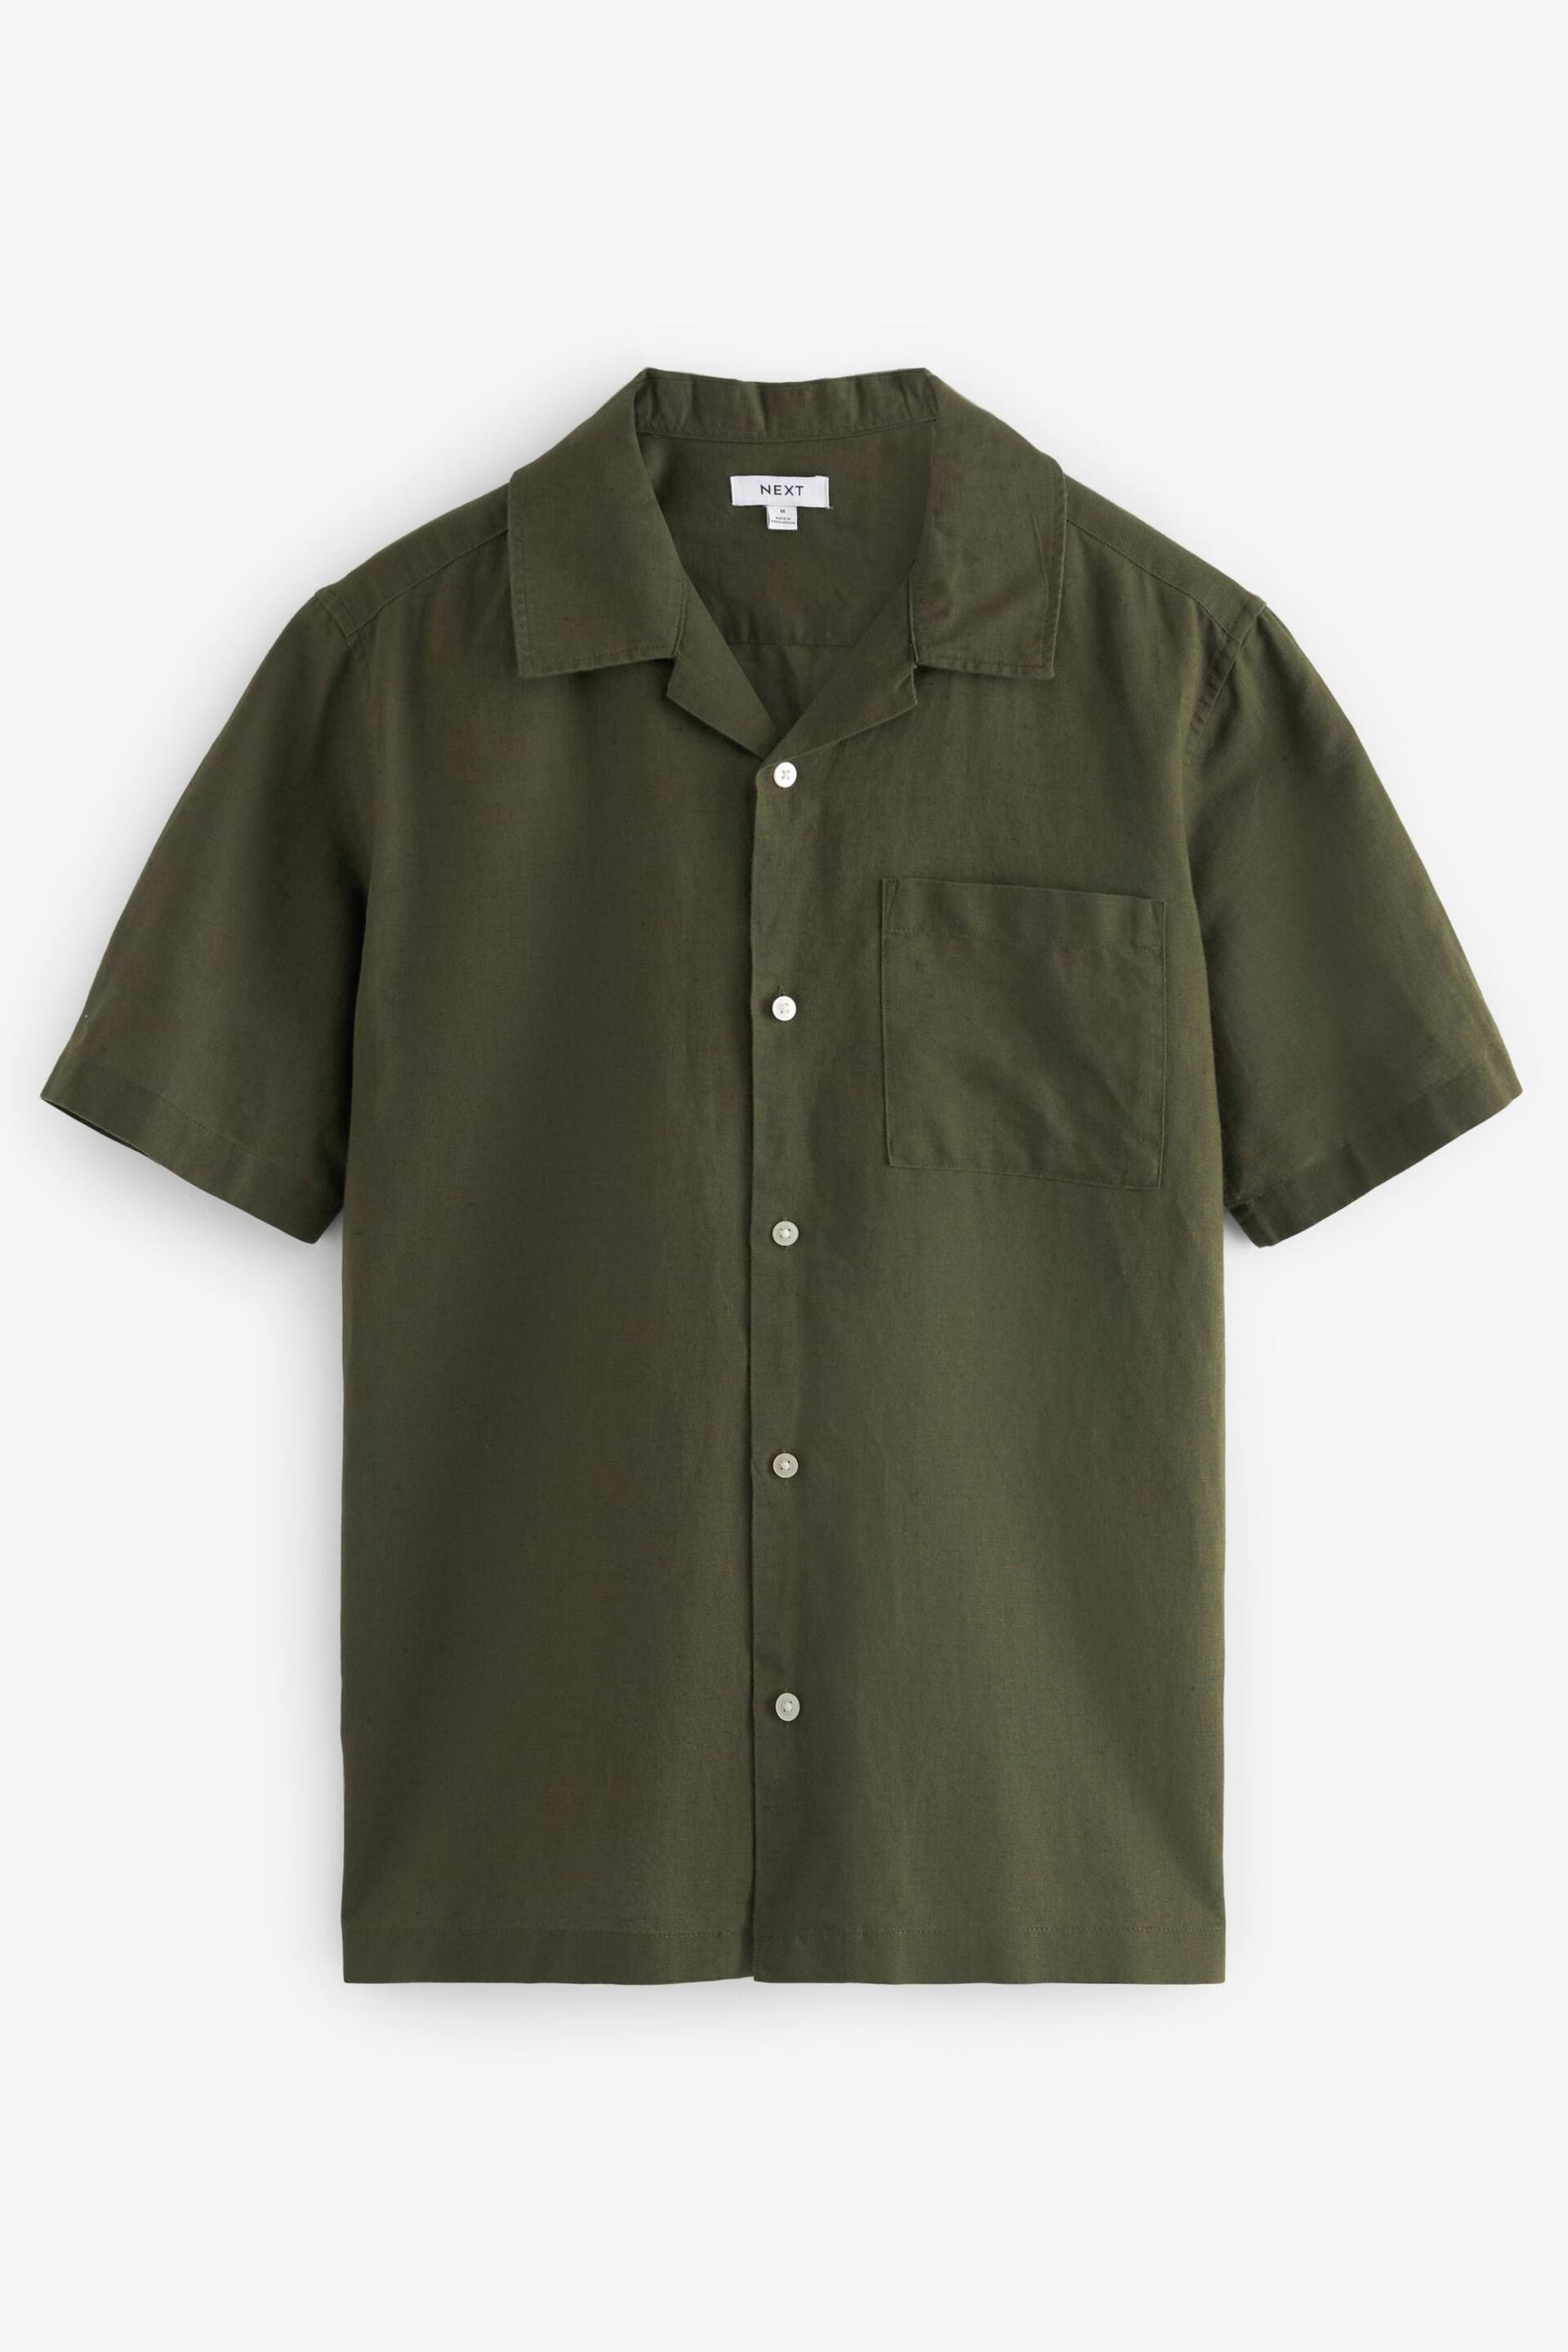 Green Cuban Collar Linen Blend Short Sleeve Shirt - Image 5 of 7